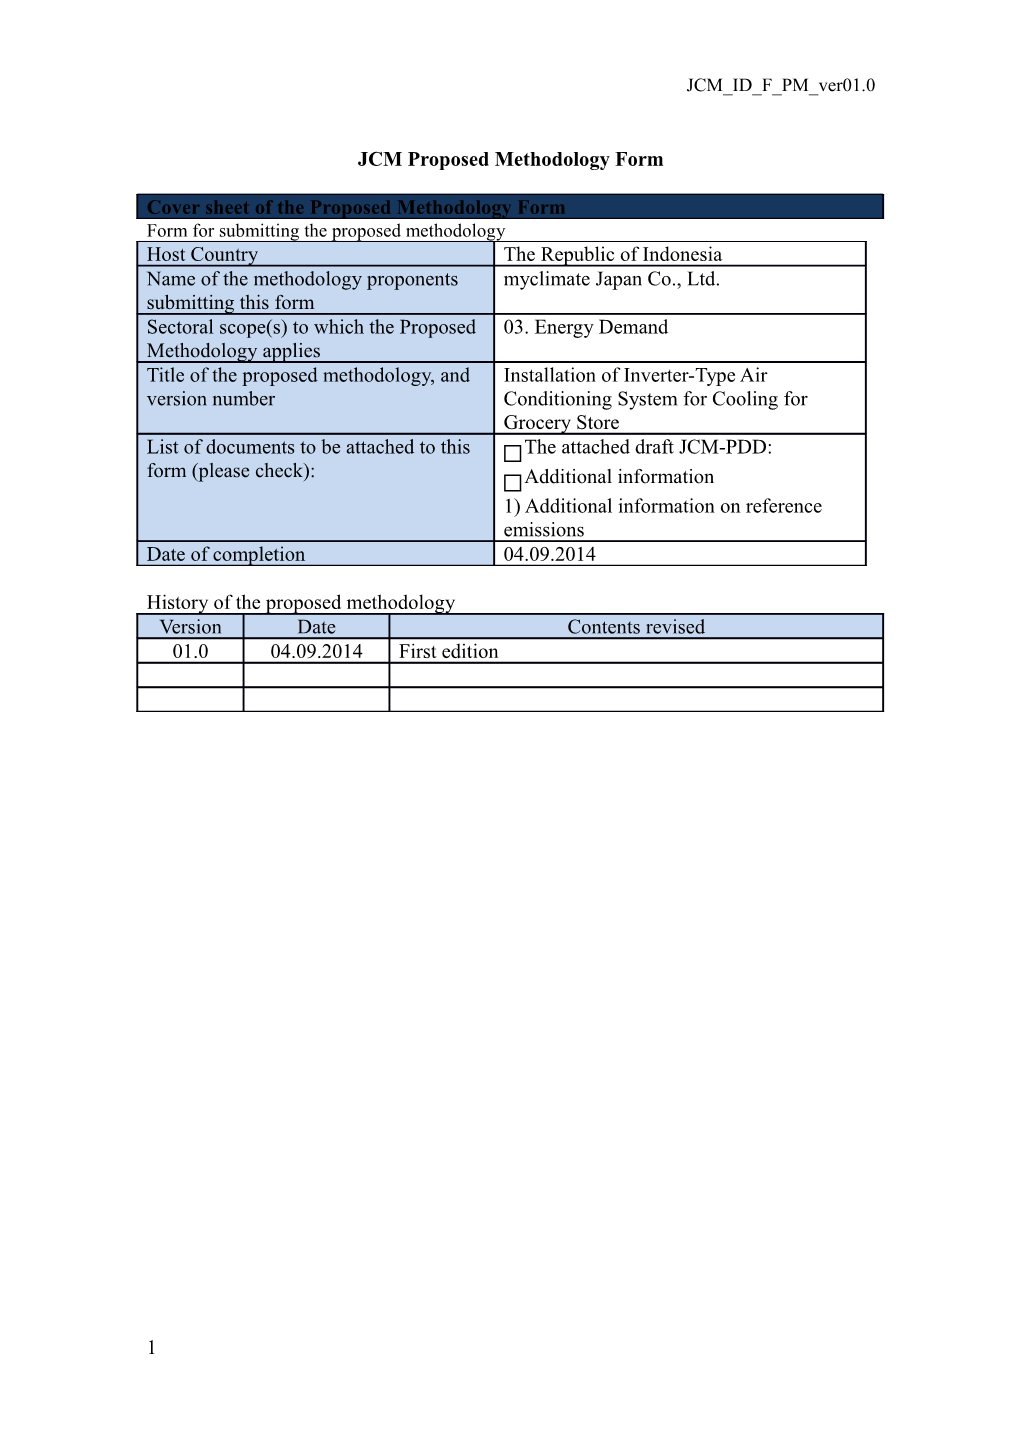 JCM Proposed Methodology Form